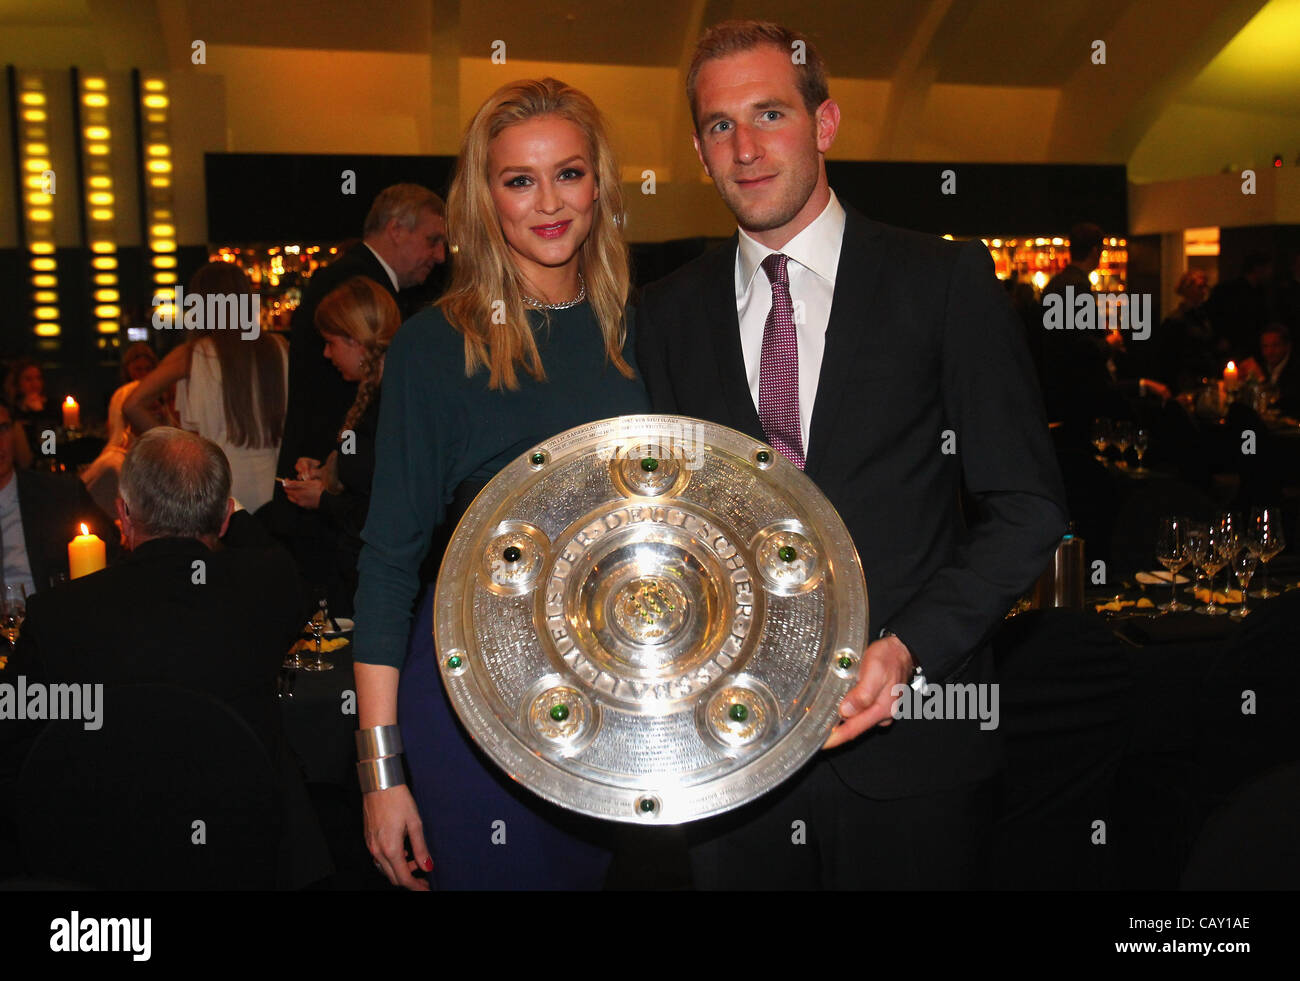 DORTMUND, Germania - 05 Maggio: Florian KRINGE e la sua fidanzata Verena posano con il trofeo al ristorante vista il 5 maggio 2012 a Dortmund, Germania. Foto Stock